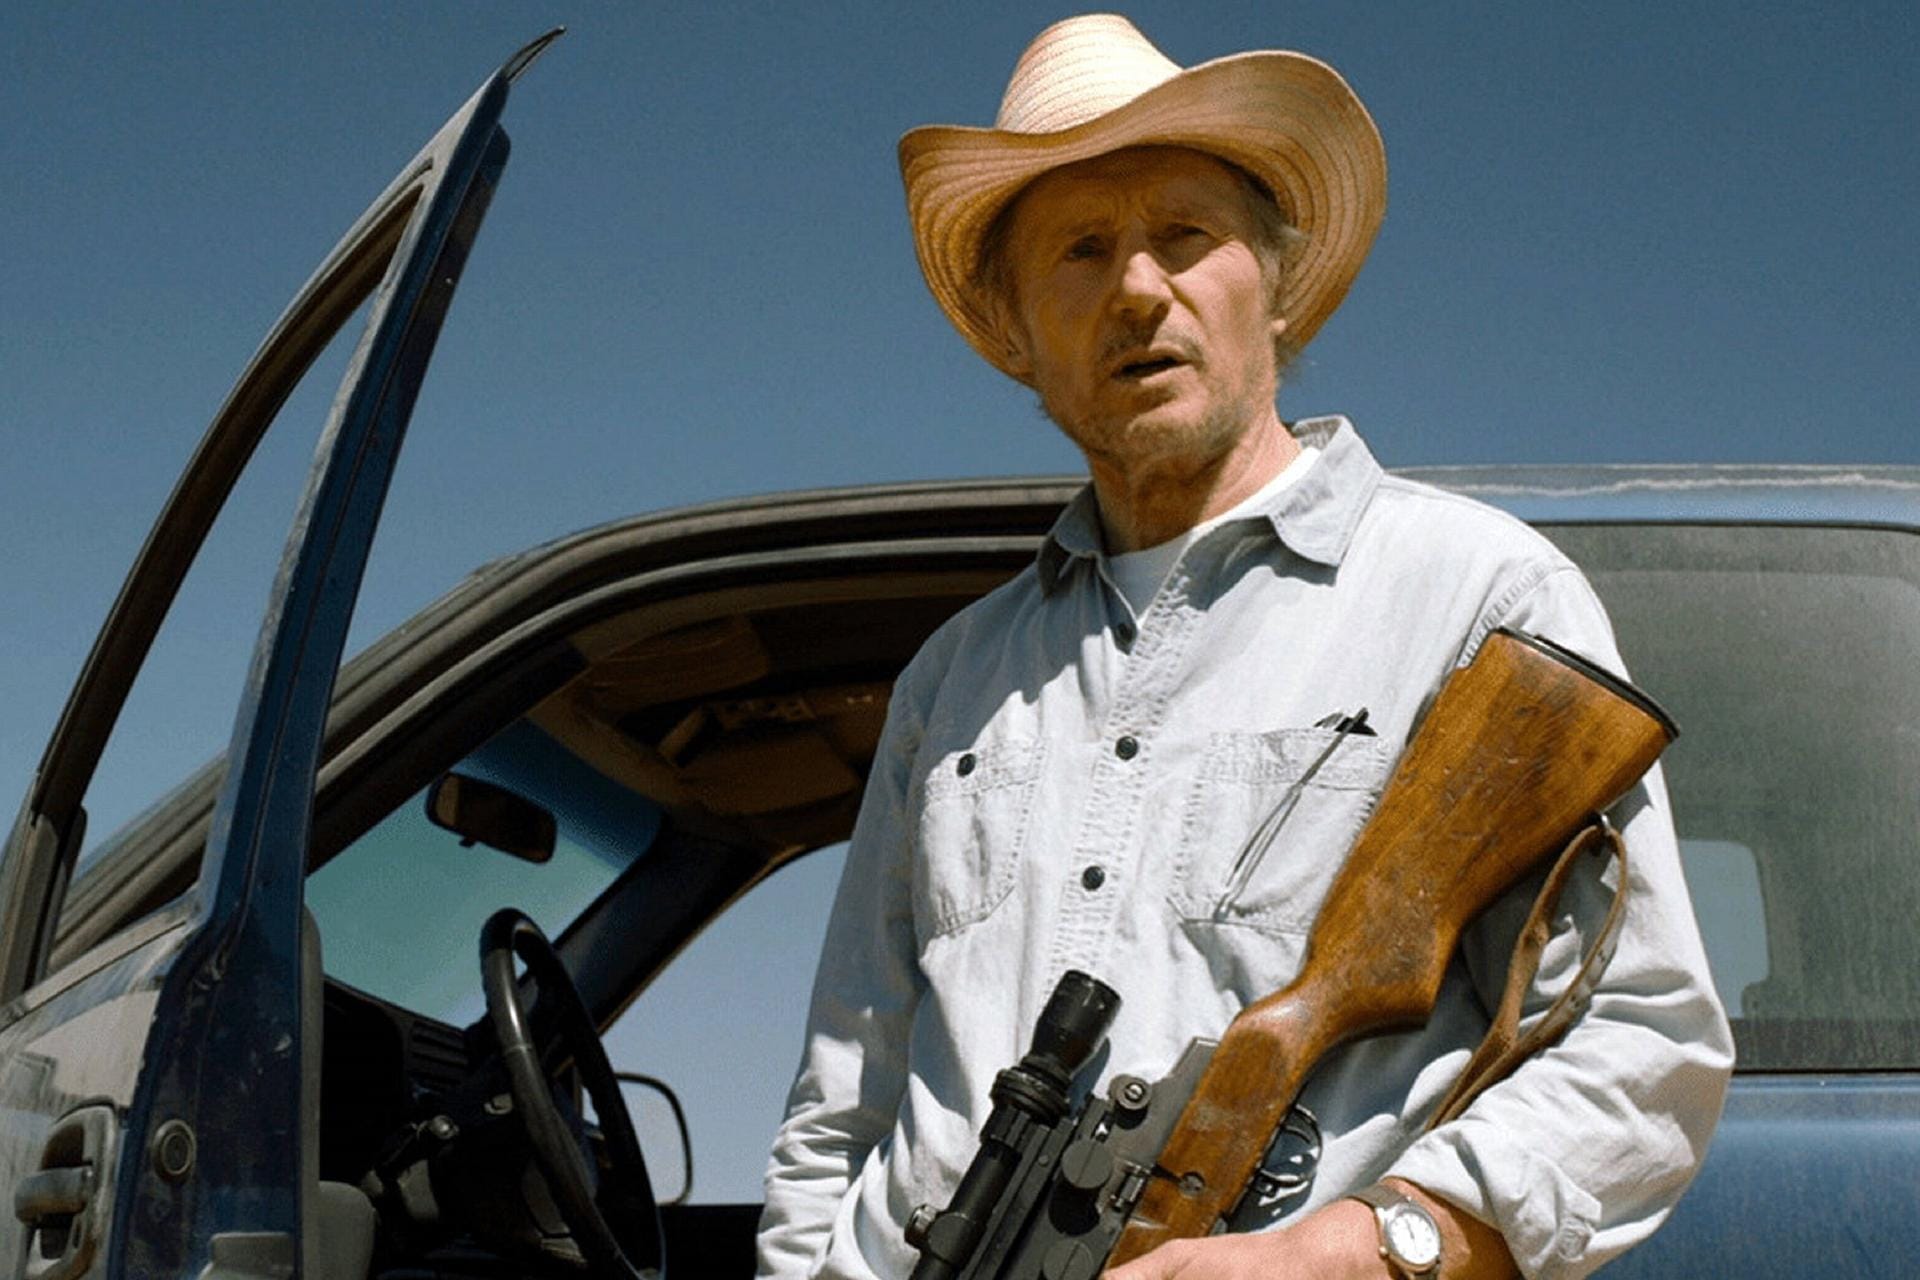 2021 verkörperte Liam Neeson in "The Marksman – Der Scharfschütze", den ehemaligen US-Marine Jim Henson, der einem Jungen hilft vor den Killern des mexikanischen Kartells zu fliehen.